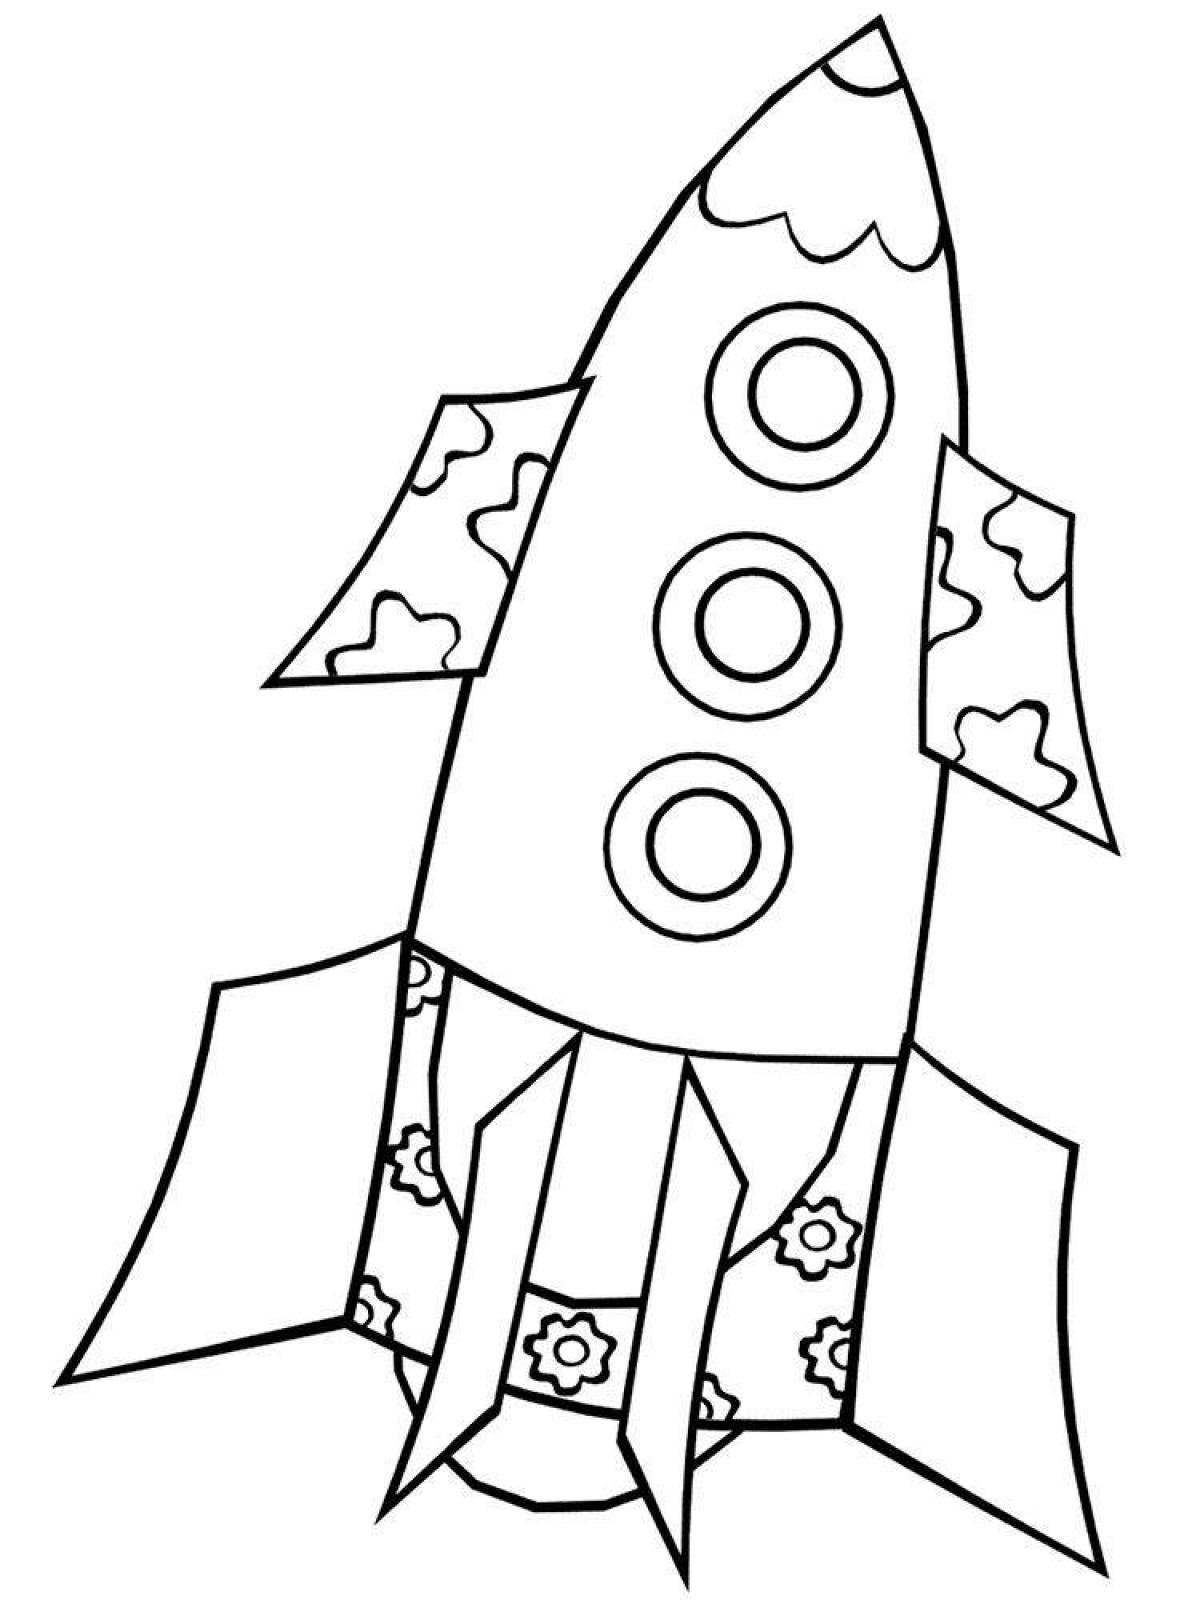 Красочная раскраска ракеты для детей 6-7 лет